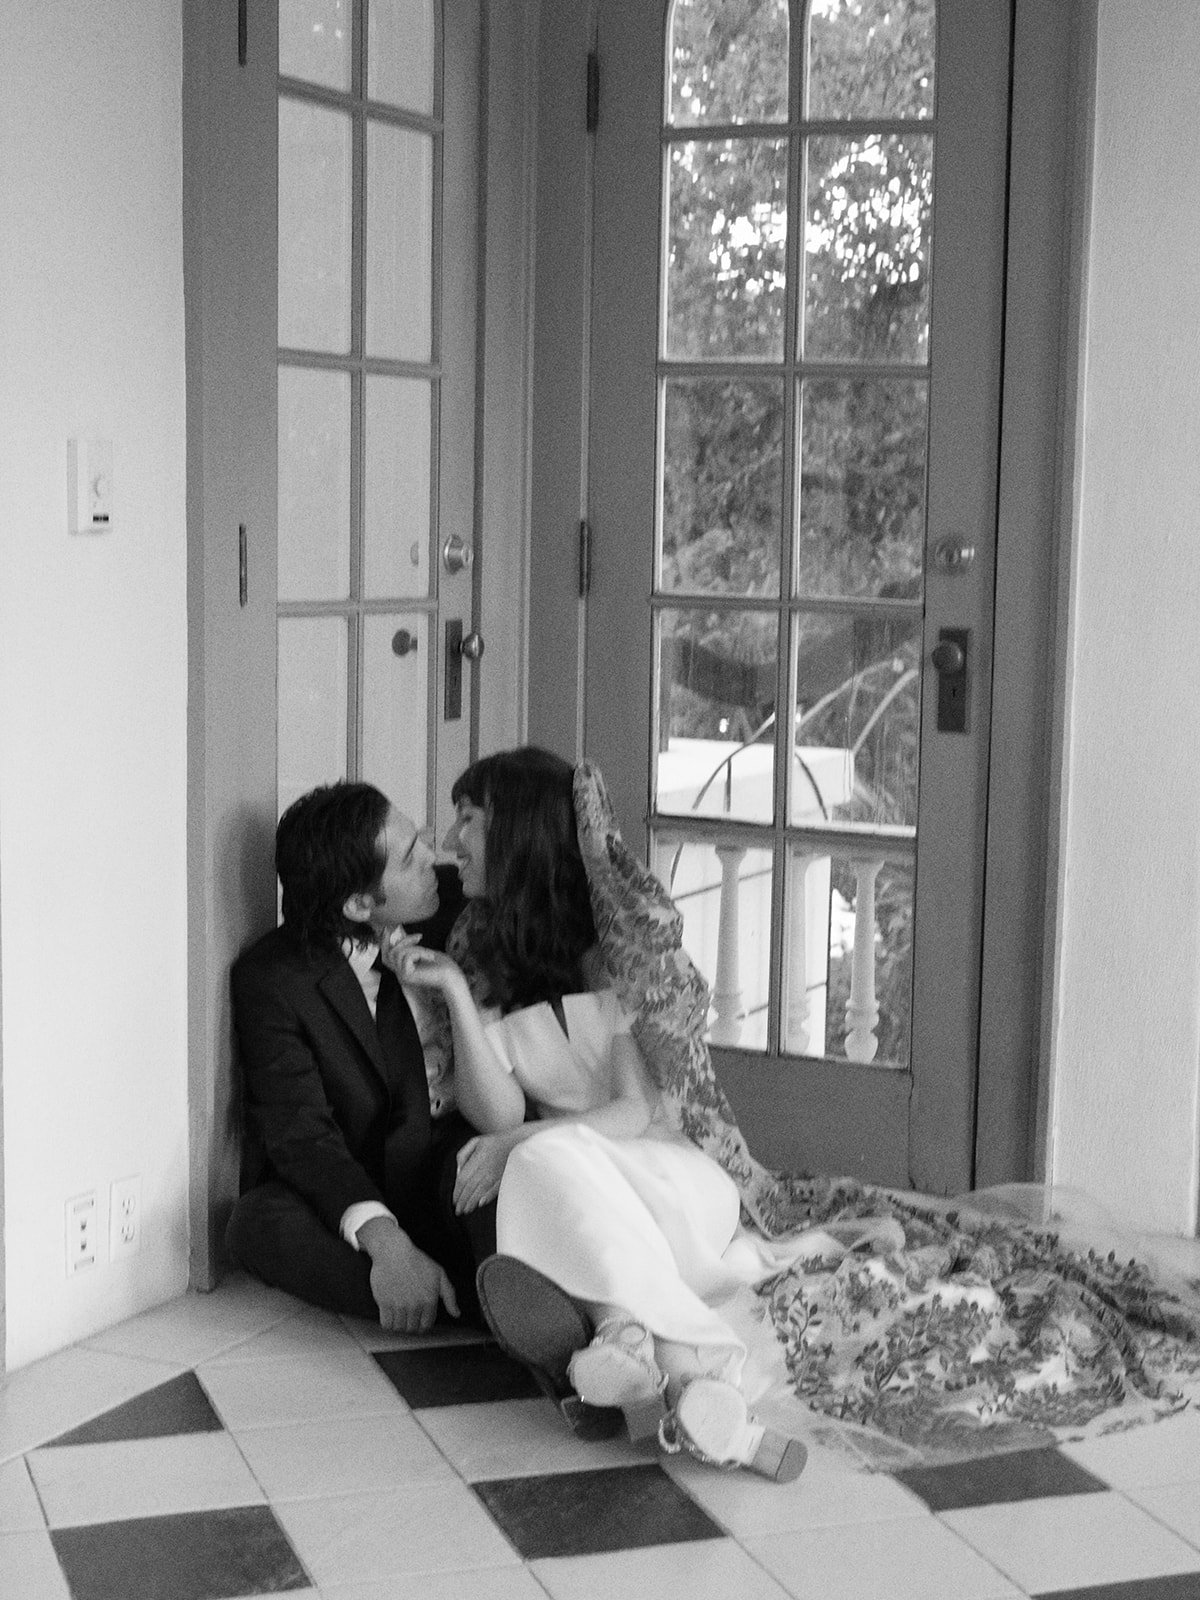 Best-Austin-Wedding-Photographers-Elopement-Film-35mm-Asheville-Santa-Barbara-Laguna-Gloria-76.jpg